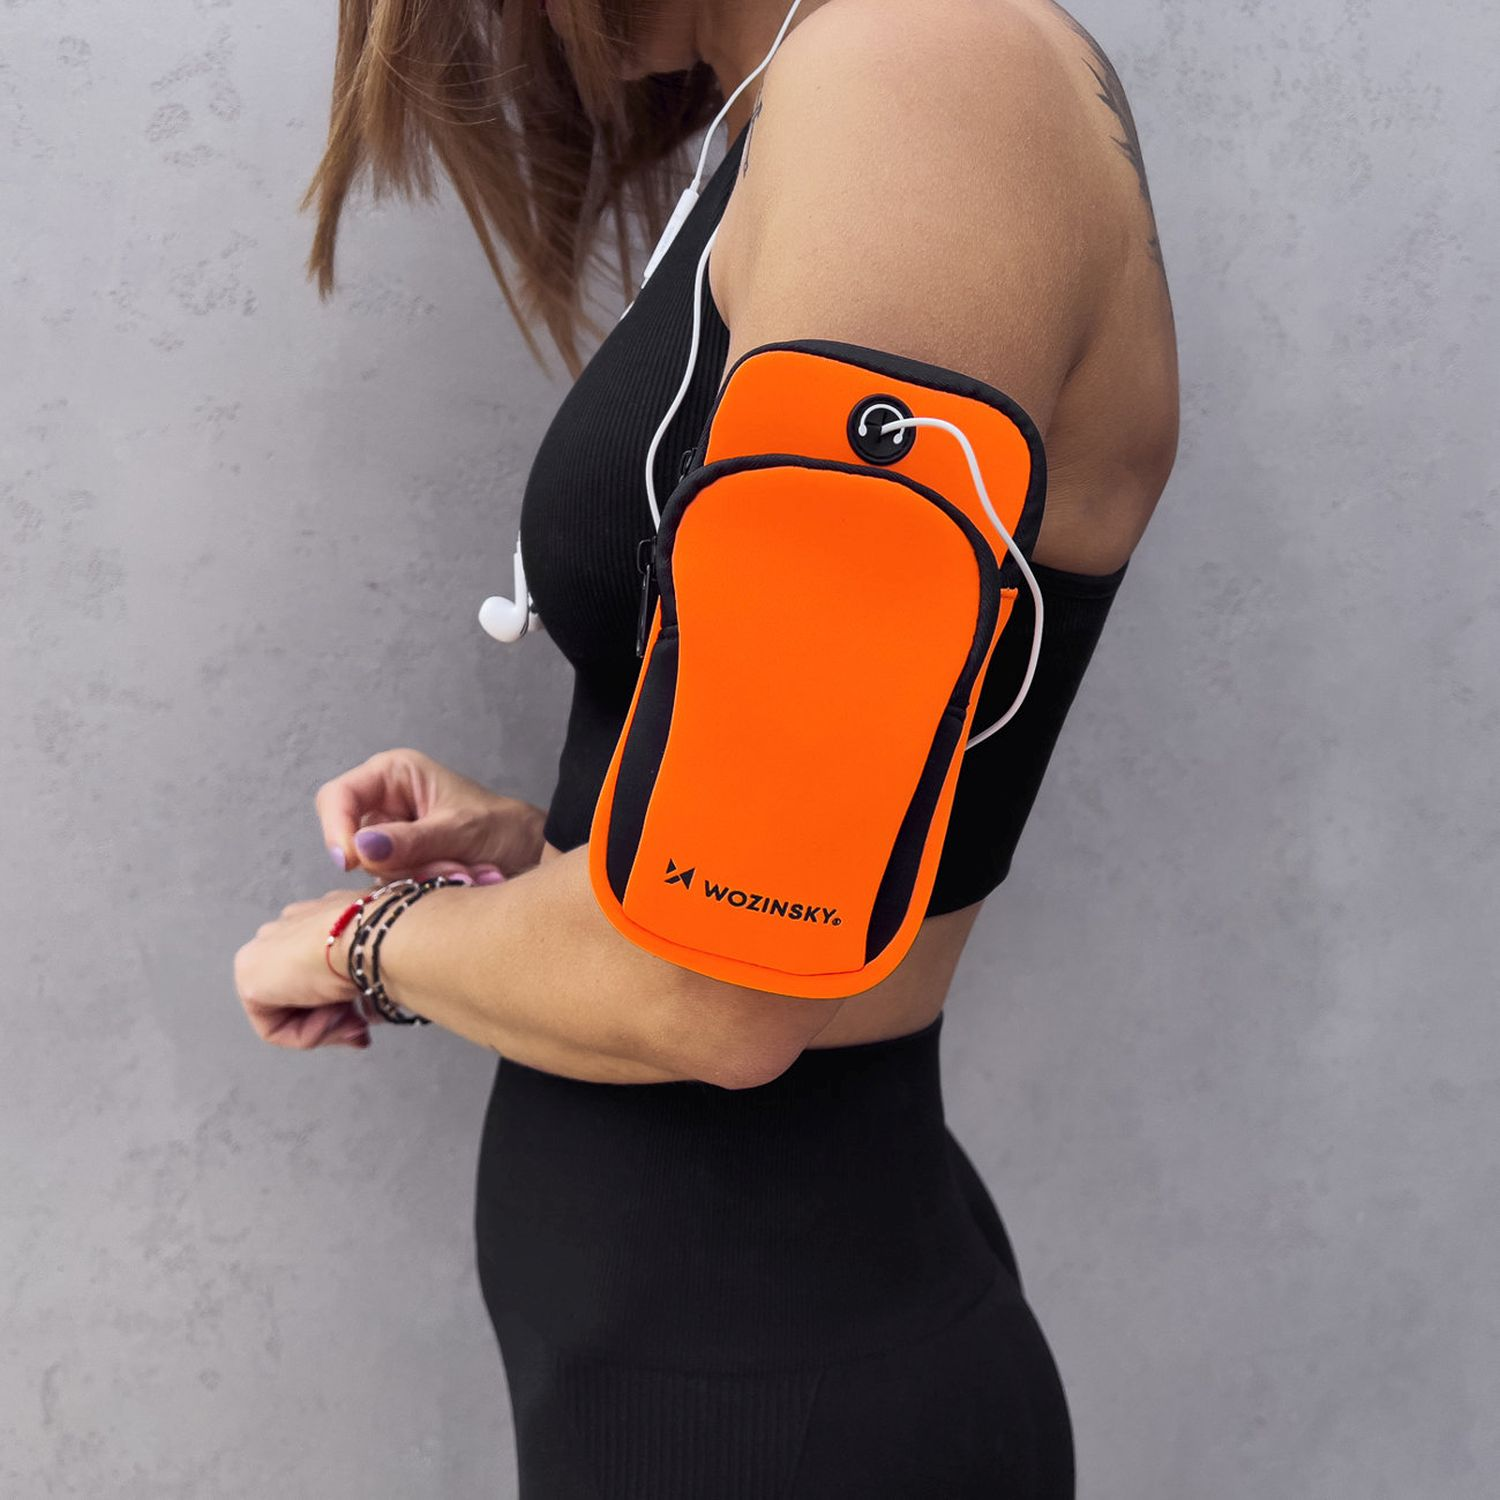 WOZINSKY für Laufband Armtasche, Universal, Armband, Universal, Handys Orange